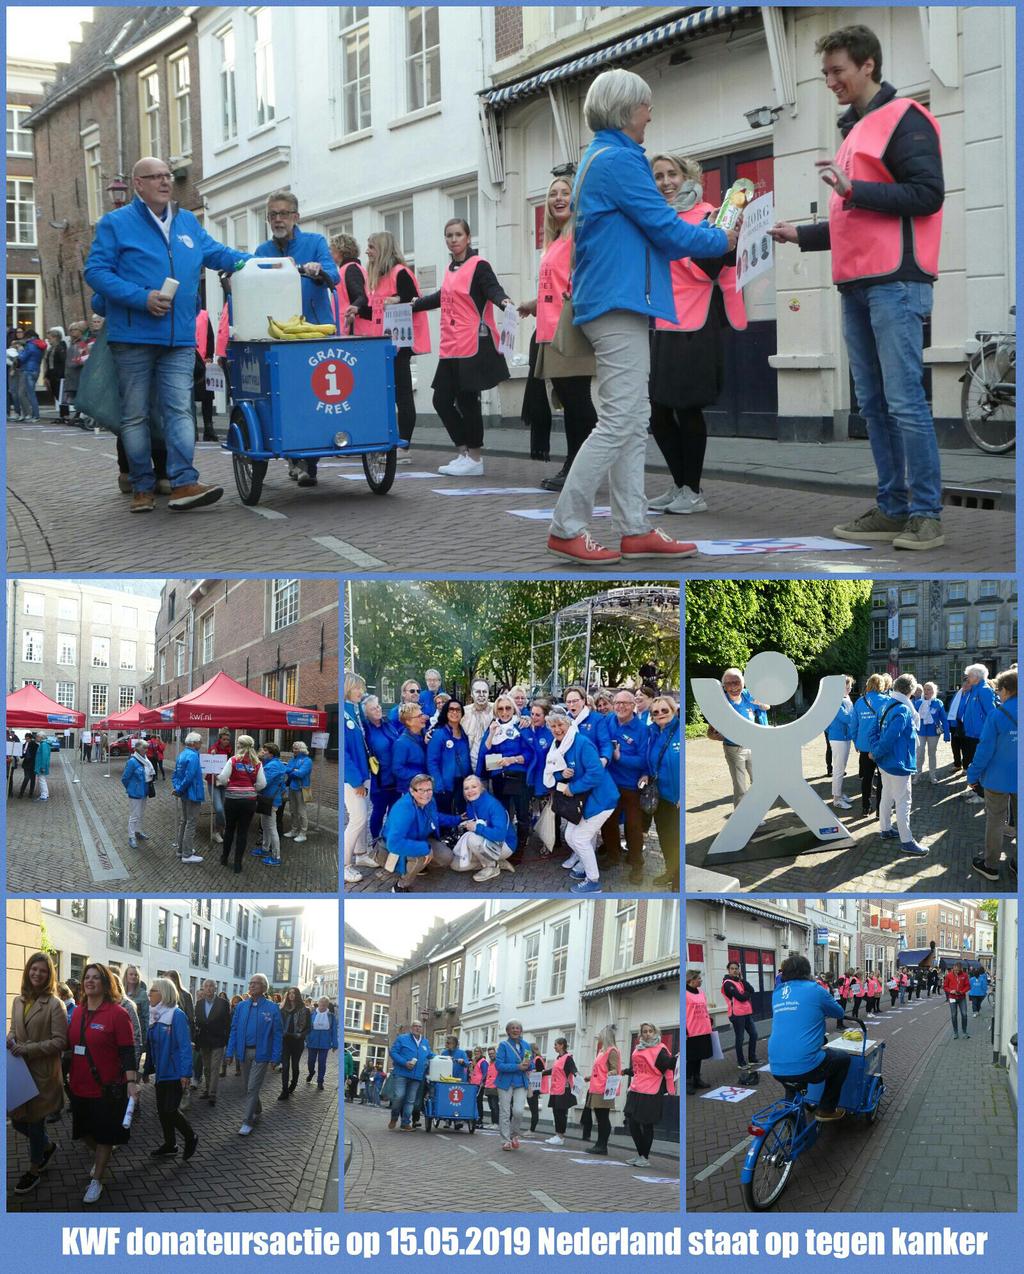 Nederland staat op tegen kanker 15 mei was het zover. Ruim 25 Blauwe Engelen hadden zich ingeroosterd om te assisteren bij het vormen van een menselijk lint door de stad.